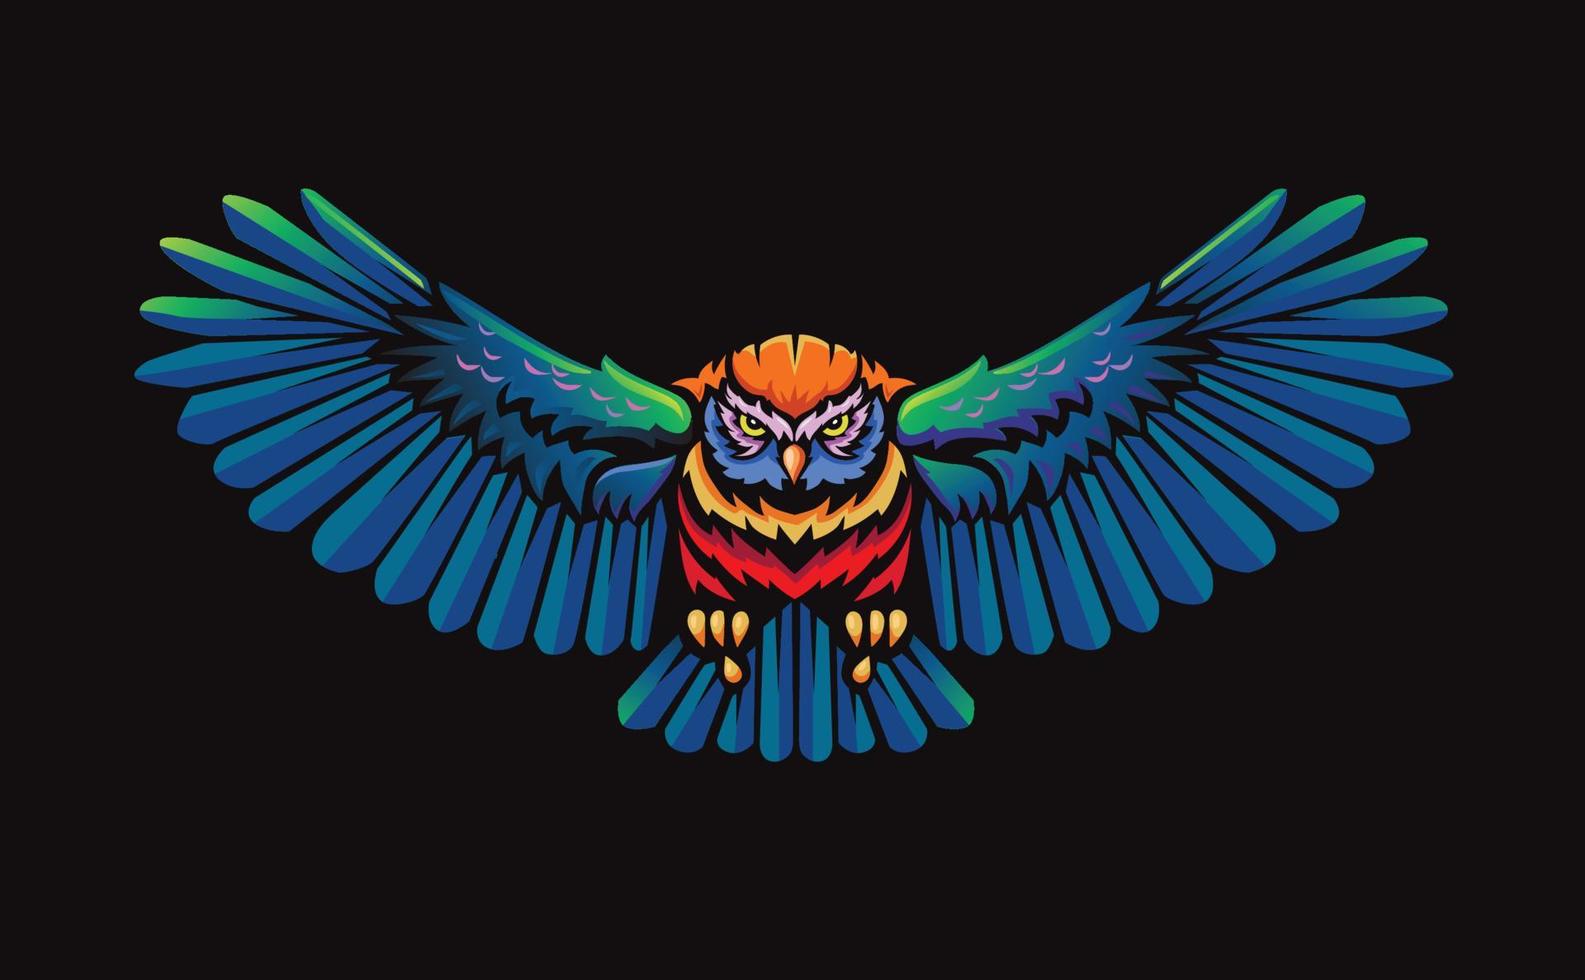 búho volador con alas abiertas ilustración en color vector